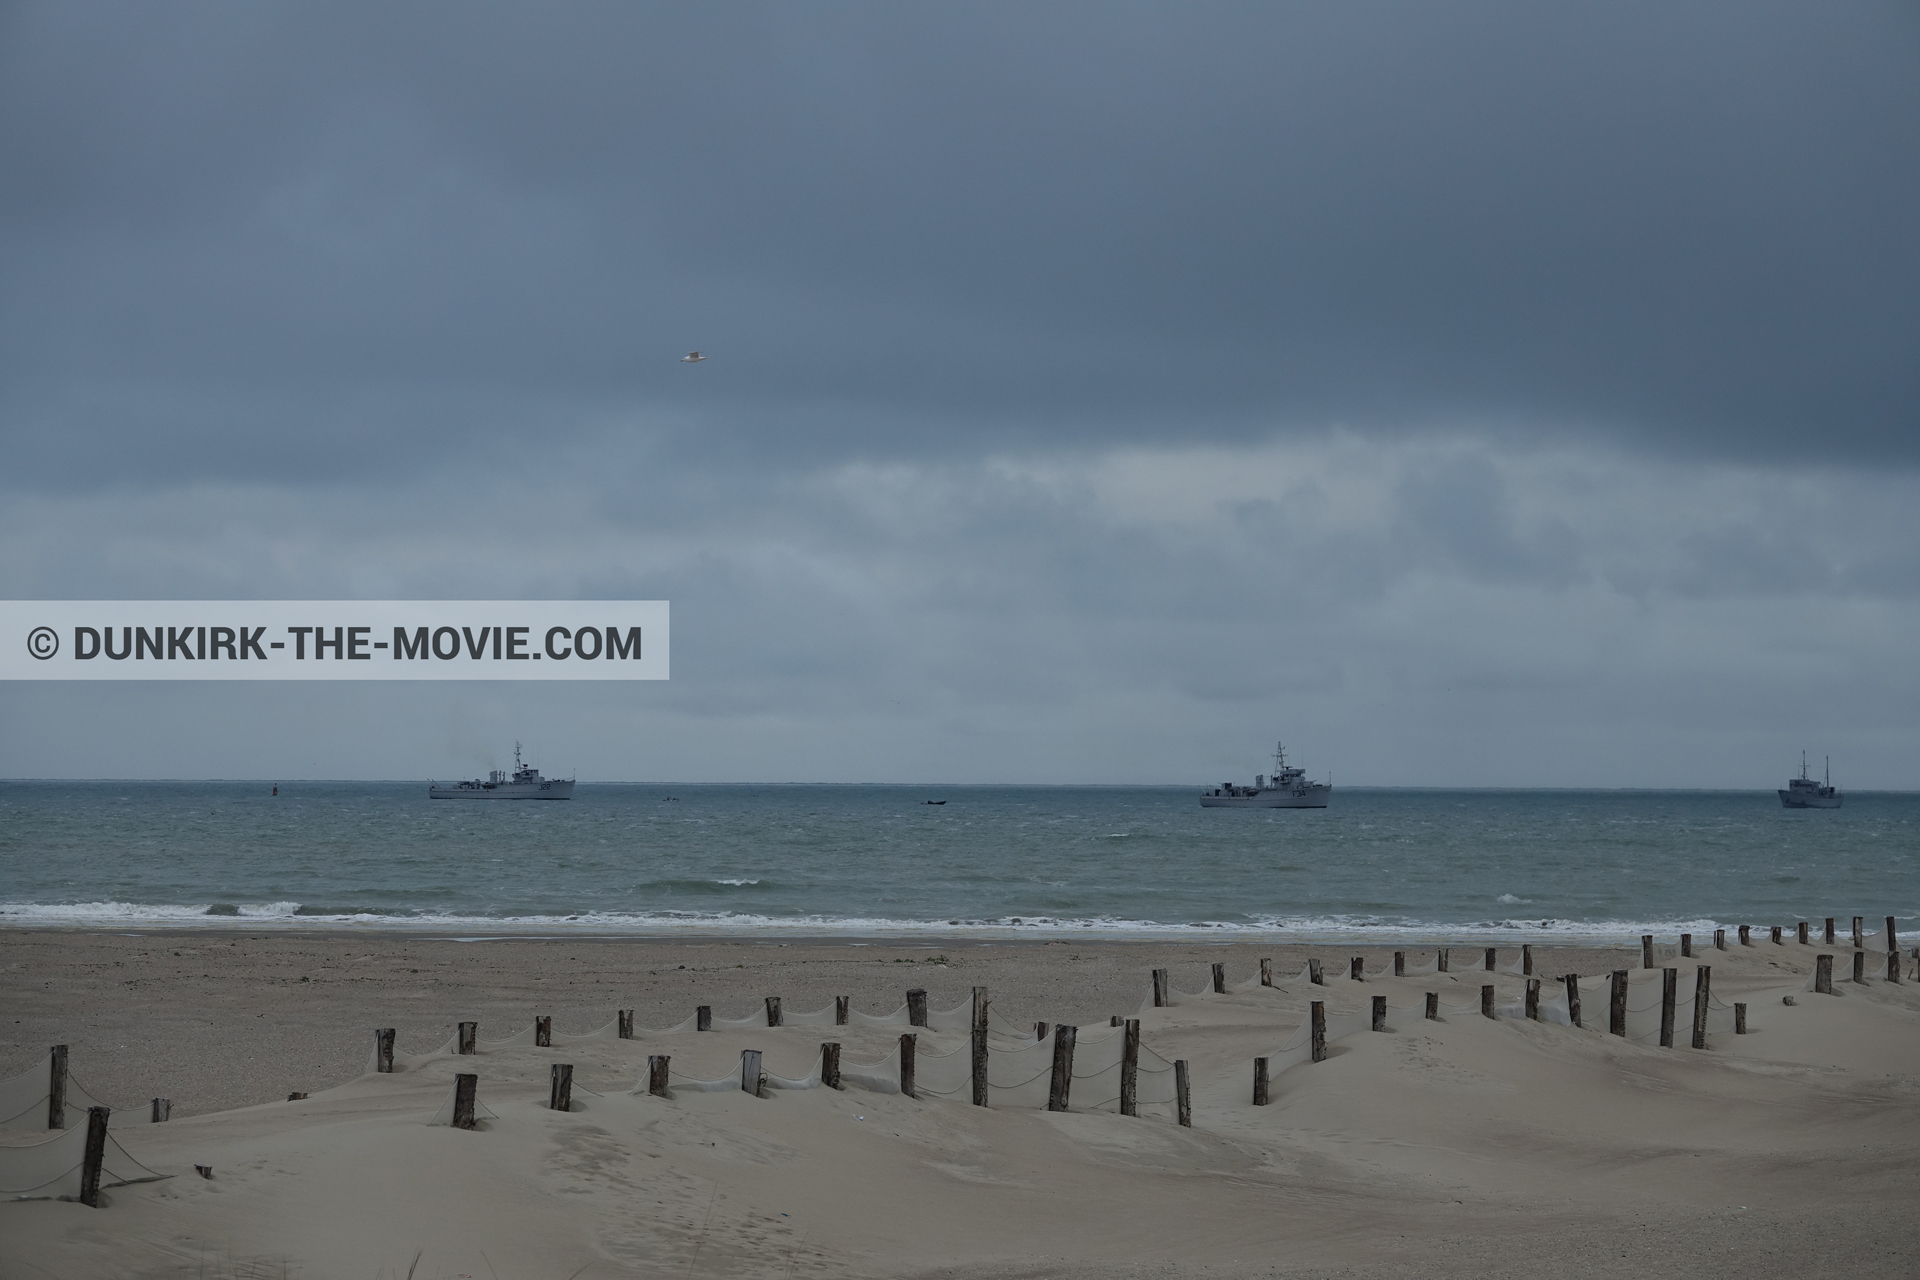 Fotos con barco, cielo gris, Malo les Bains, mares calma, playa,  durante el rodaje de la película Dunkerque de Nolan